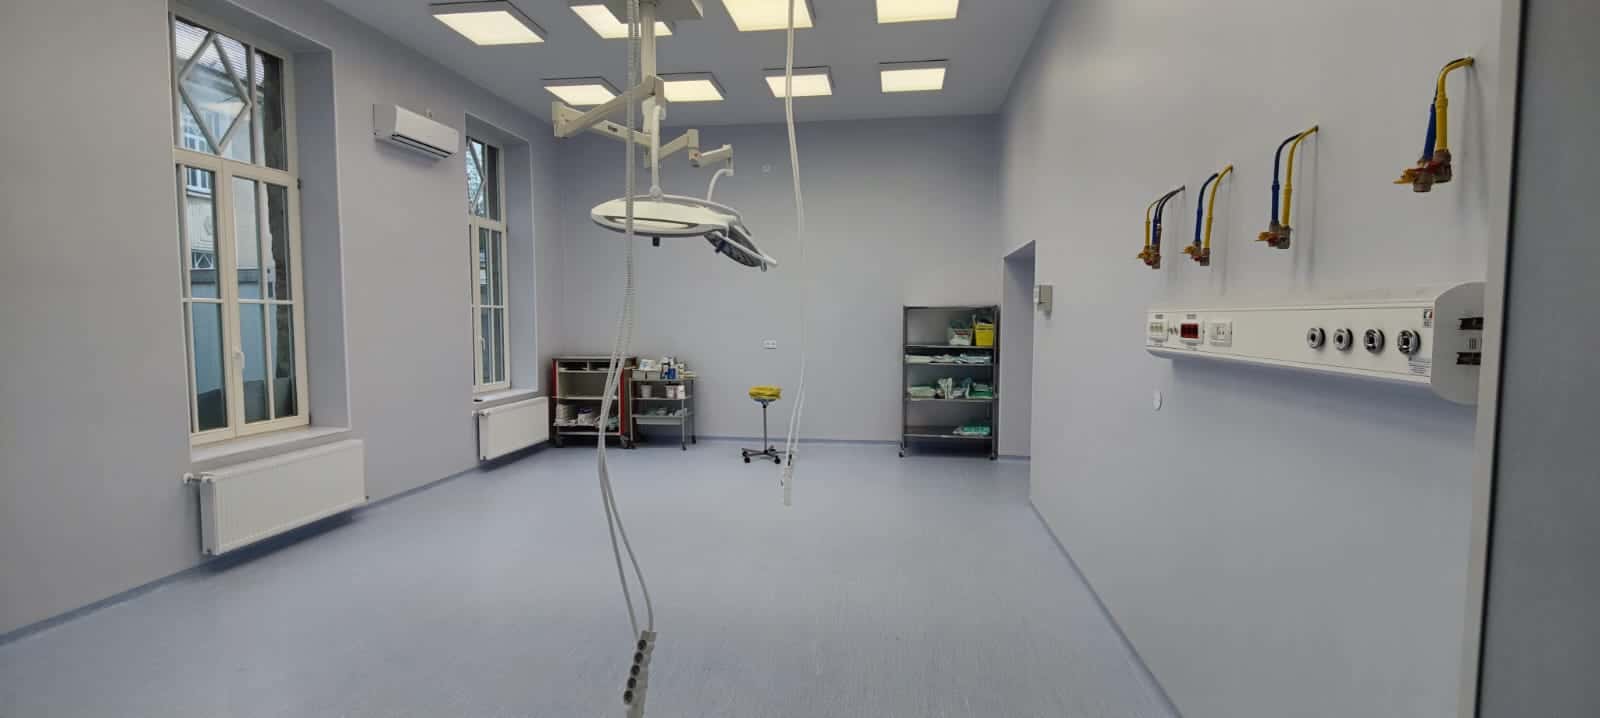 foto secția clinică chirurgie generală ii de la spitalul judetean sibiu, modernizată și redeschisă pentru pacienți